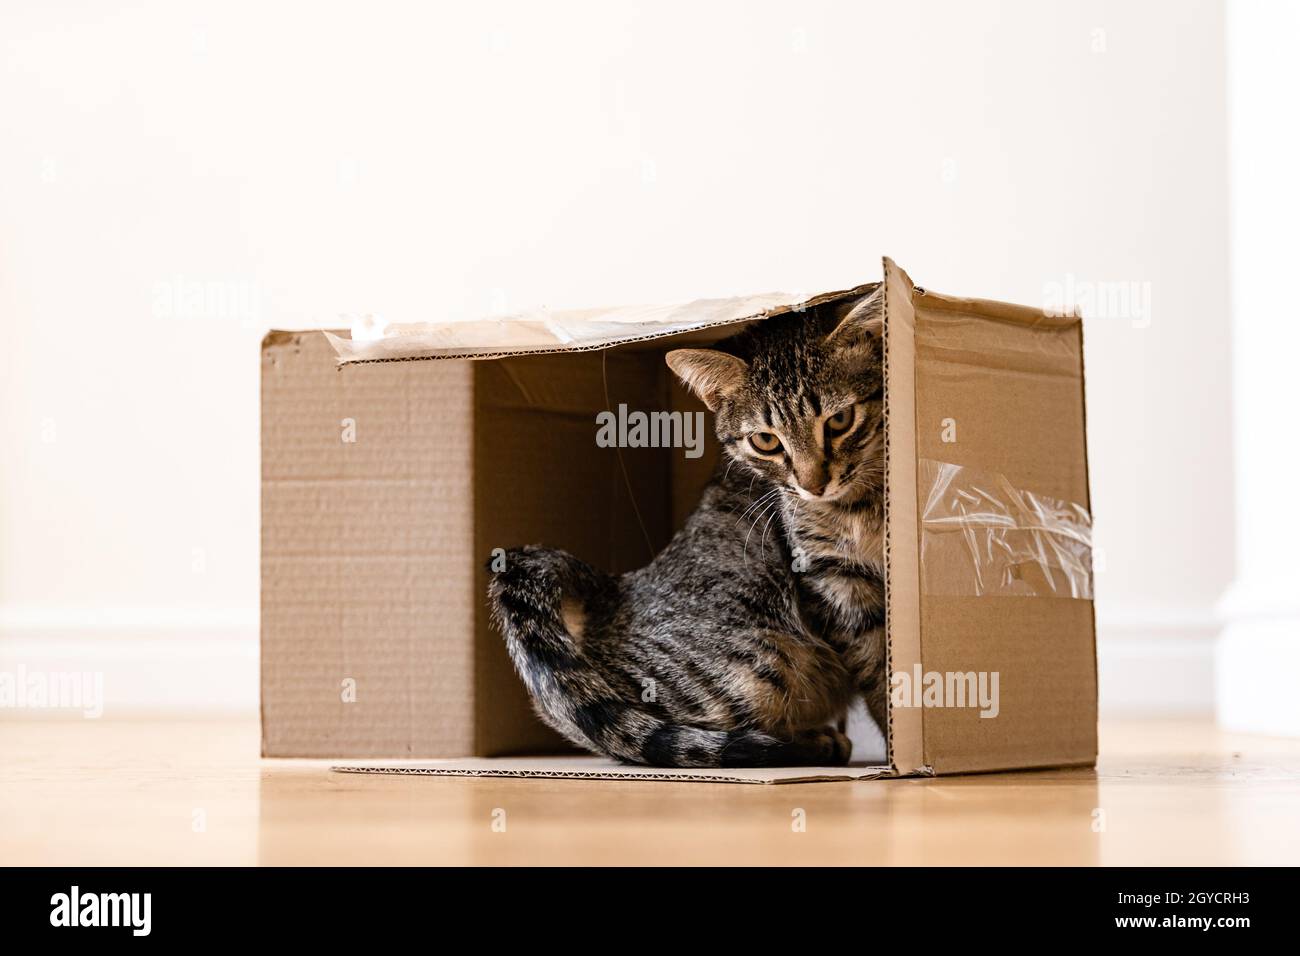 Lustige gestromte Katze in einem Karton auf dem Boden. Paket mit Haustier  Freund. Graues Kätzchen mit schönen Augen, die drinnen spielen  Stockfotografie - Alamy